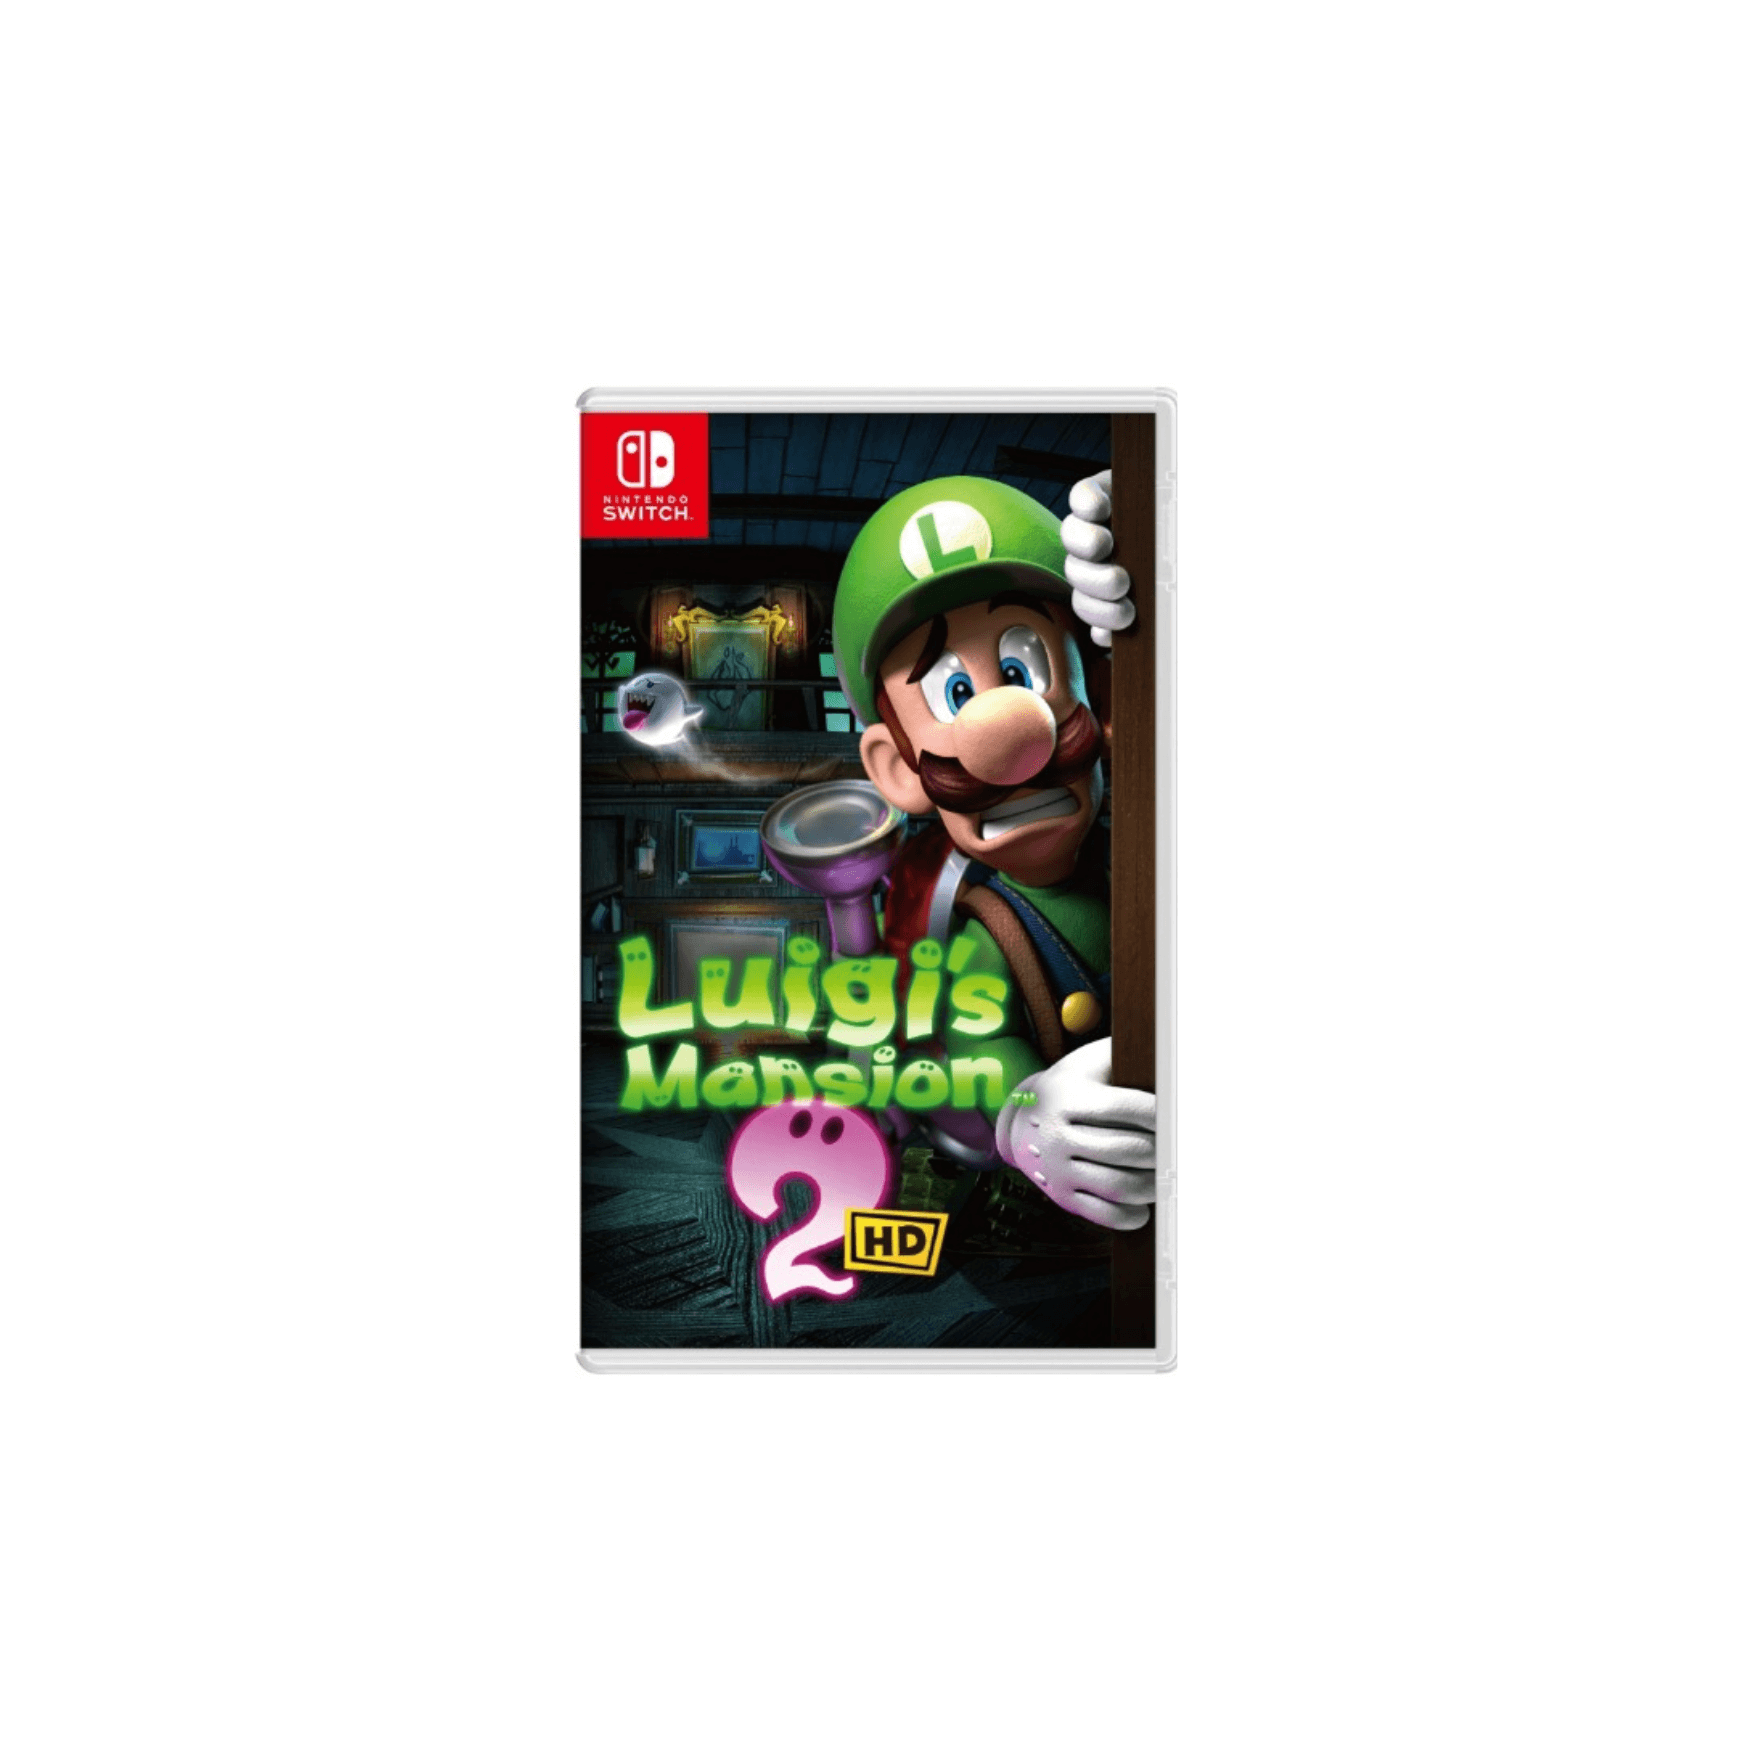 Nintendo Switch Game Luigi's Mansion 2 HD